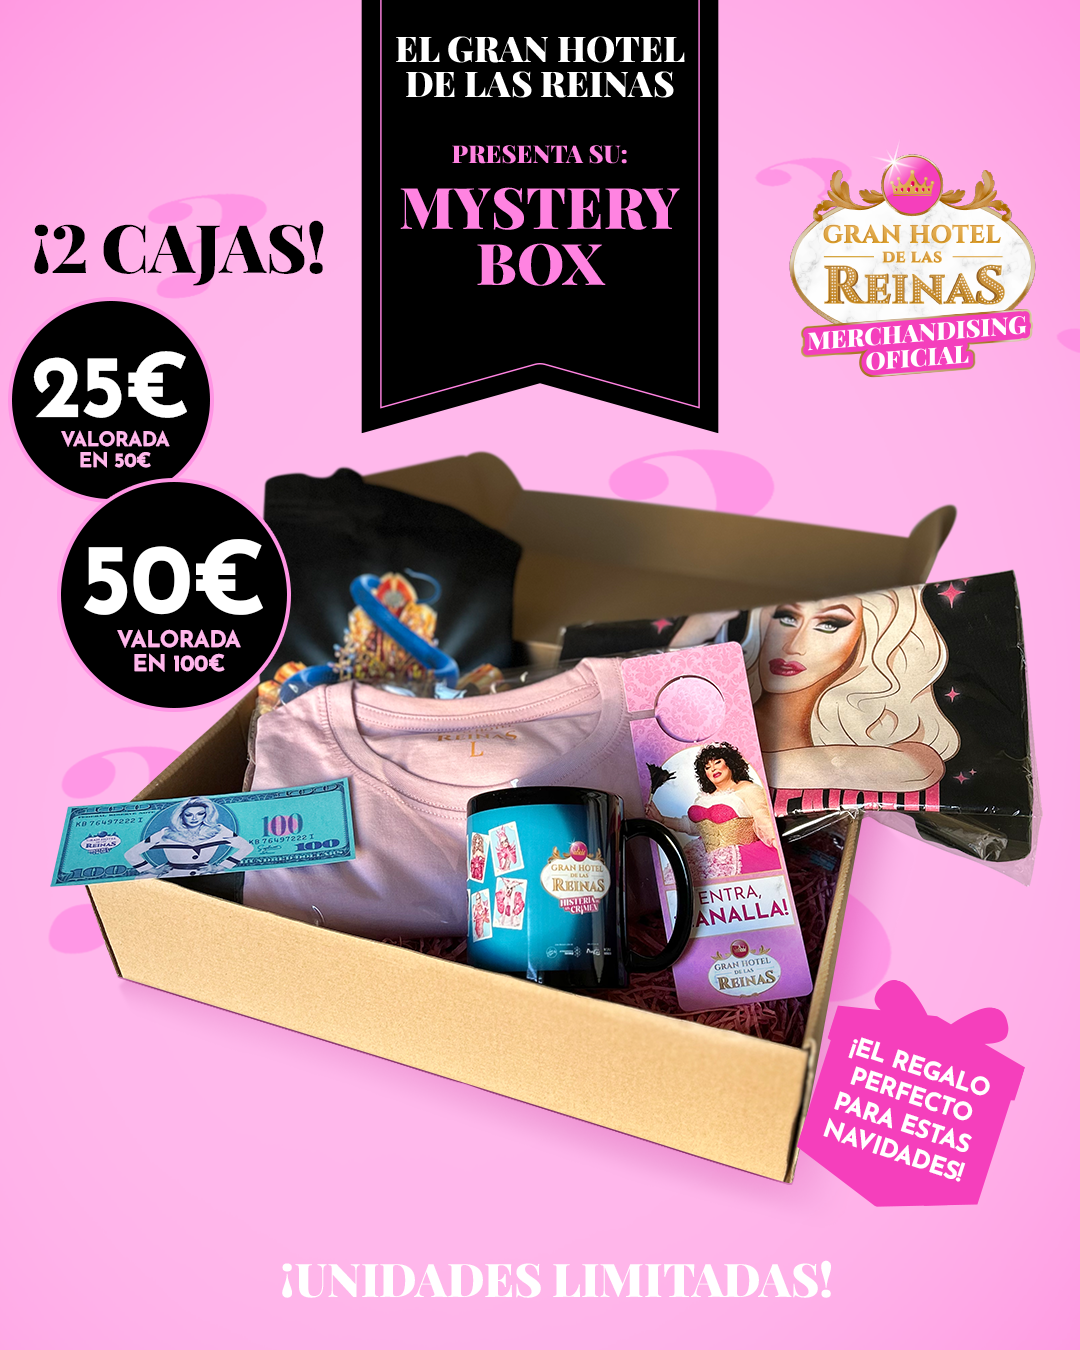 Mistery Box Gran Hotel de las Reinas 50€